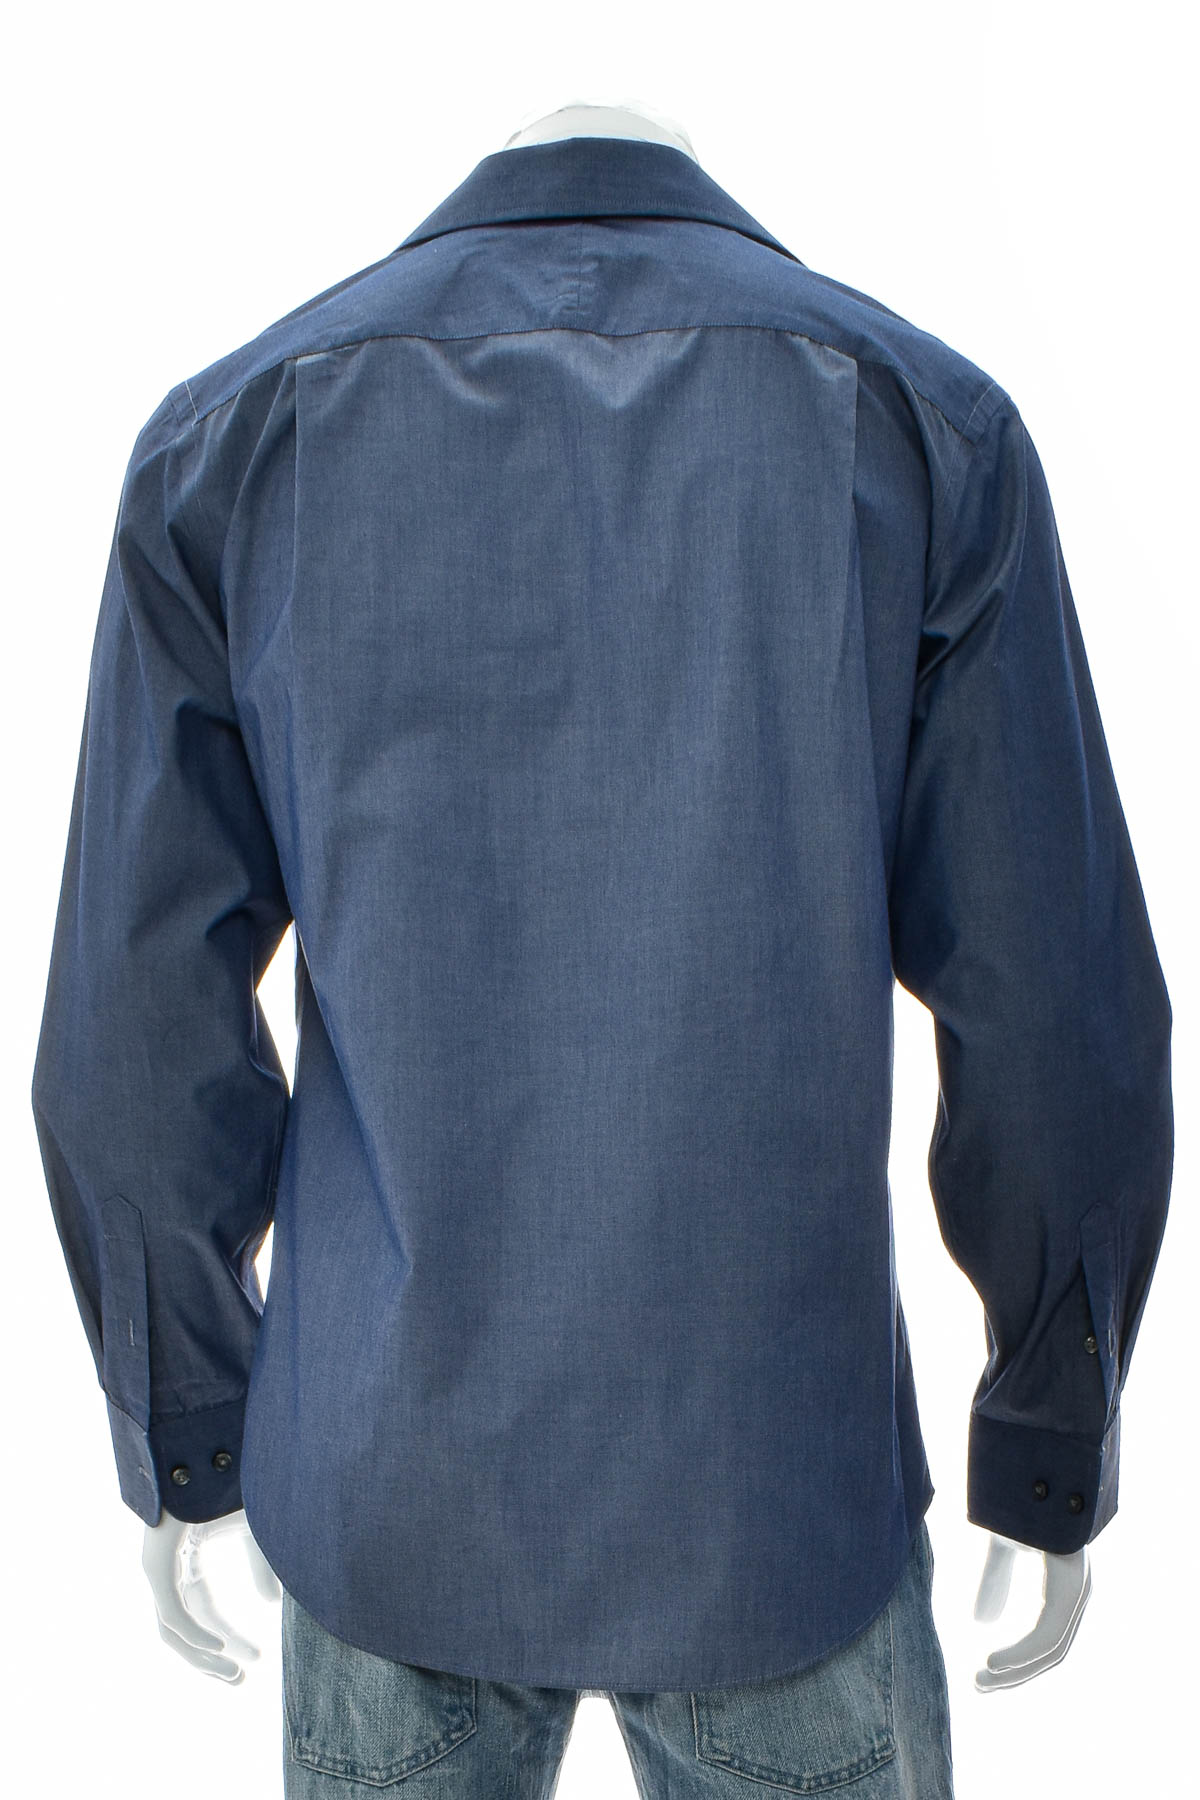 Ανδρικό πουκάμισο - MERONA - 1